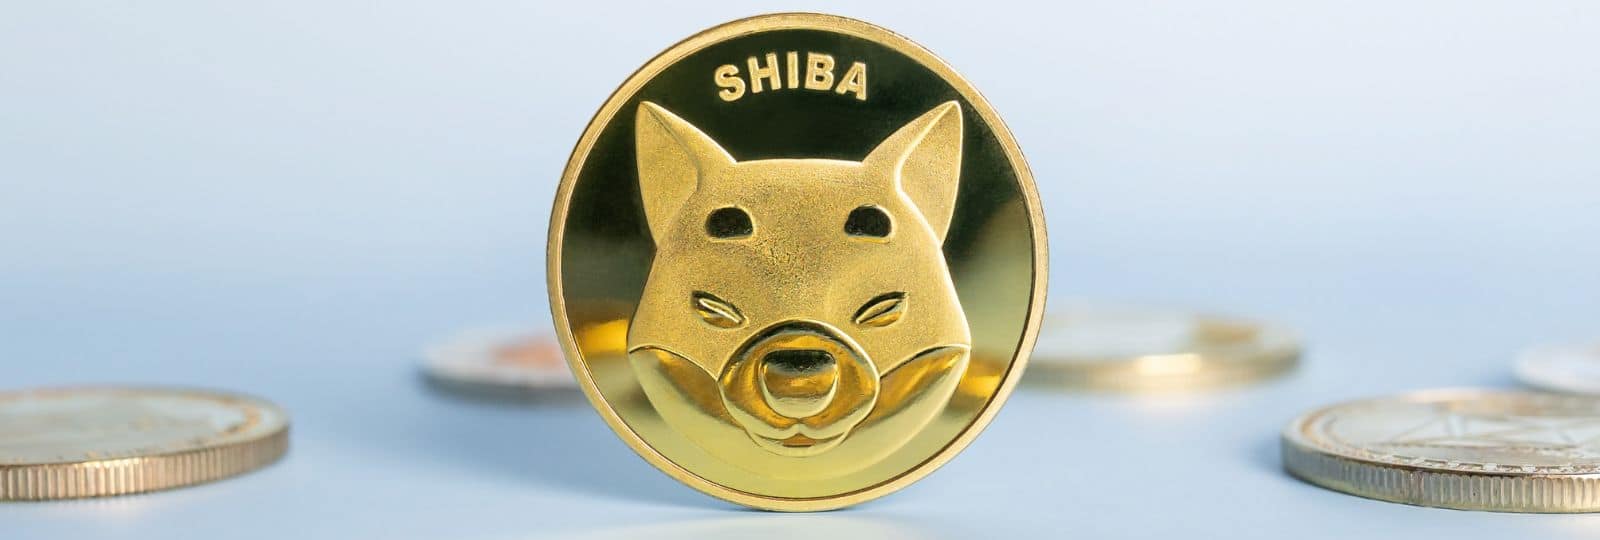 Shiba Inu continues the uptrend: Will SHIB reach $0.001 in 2023?